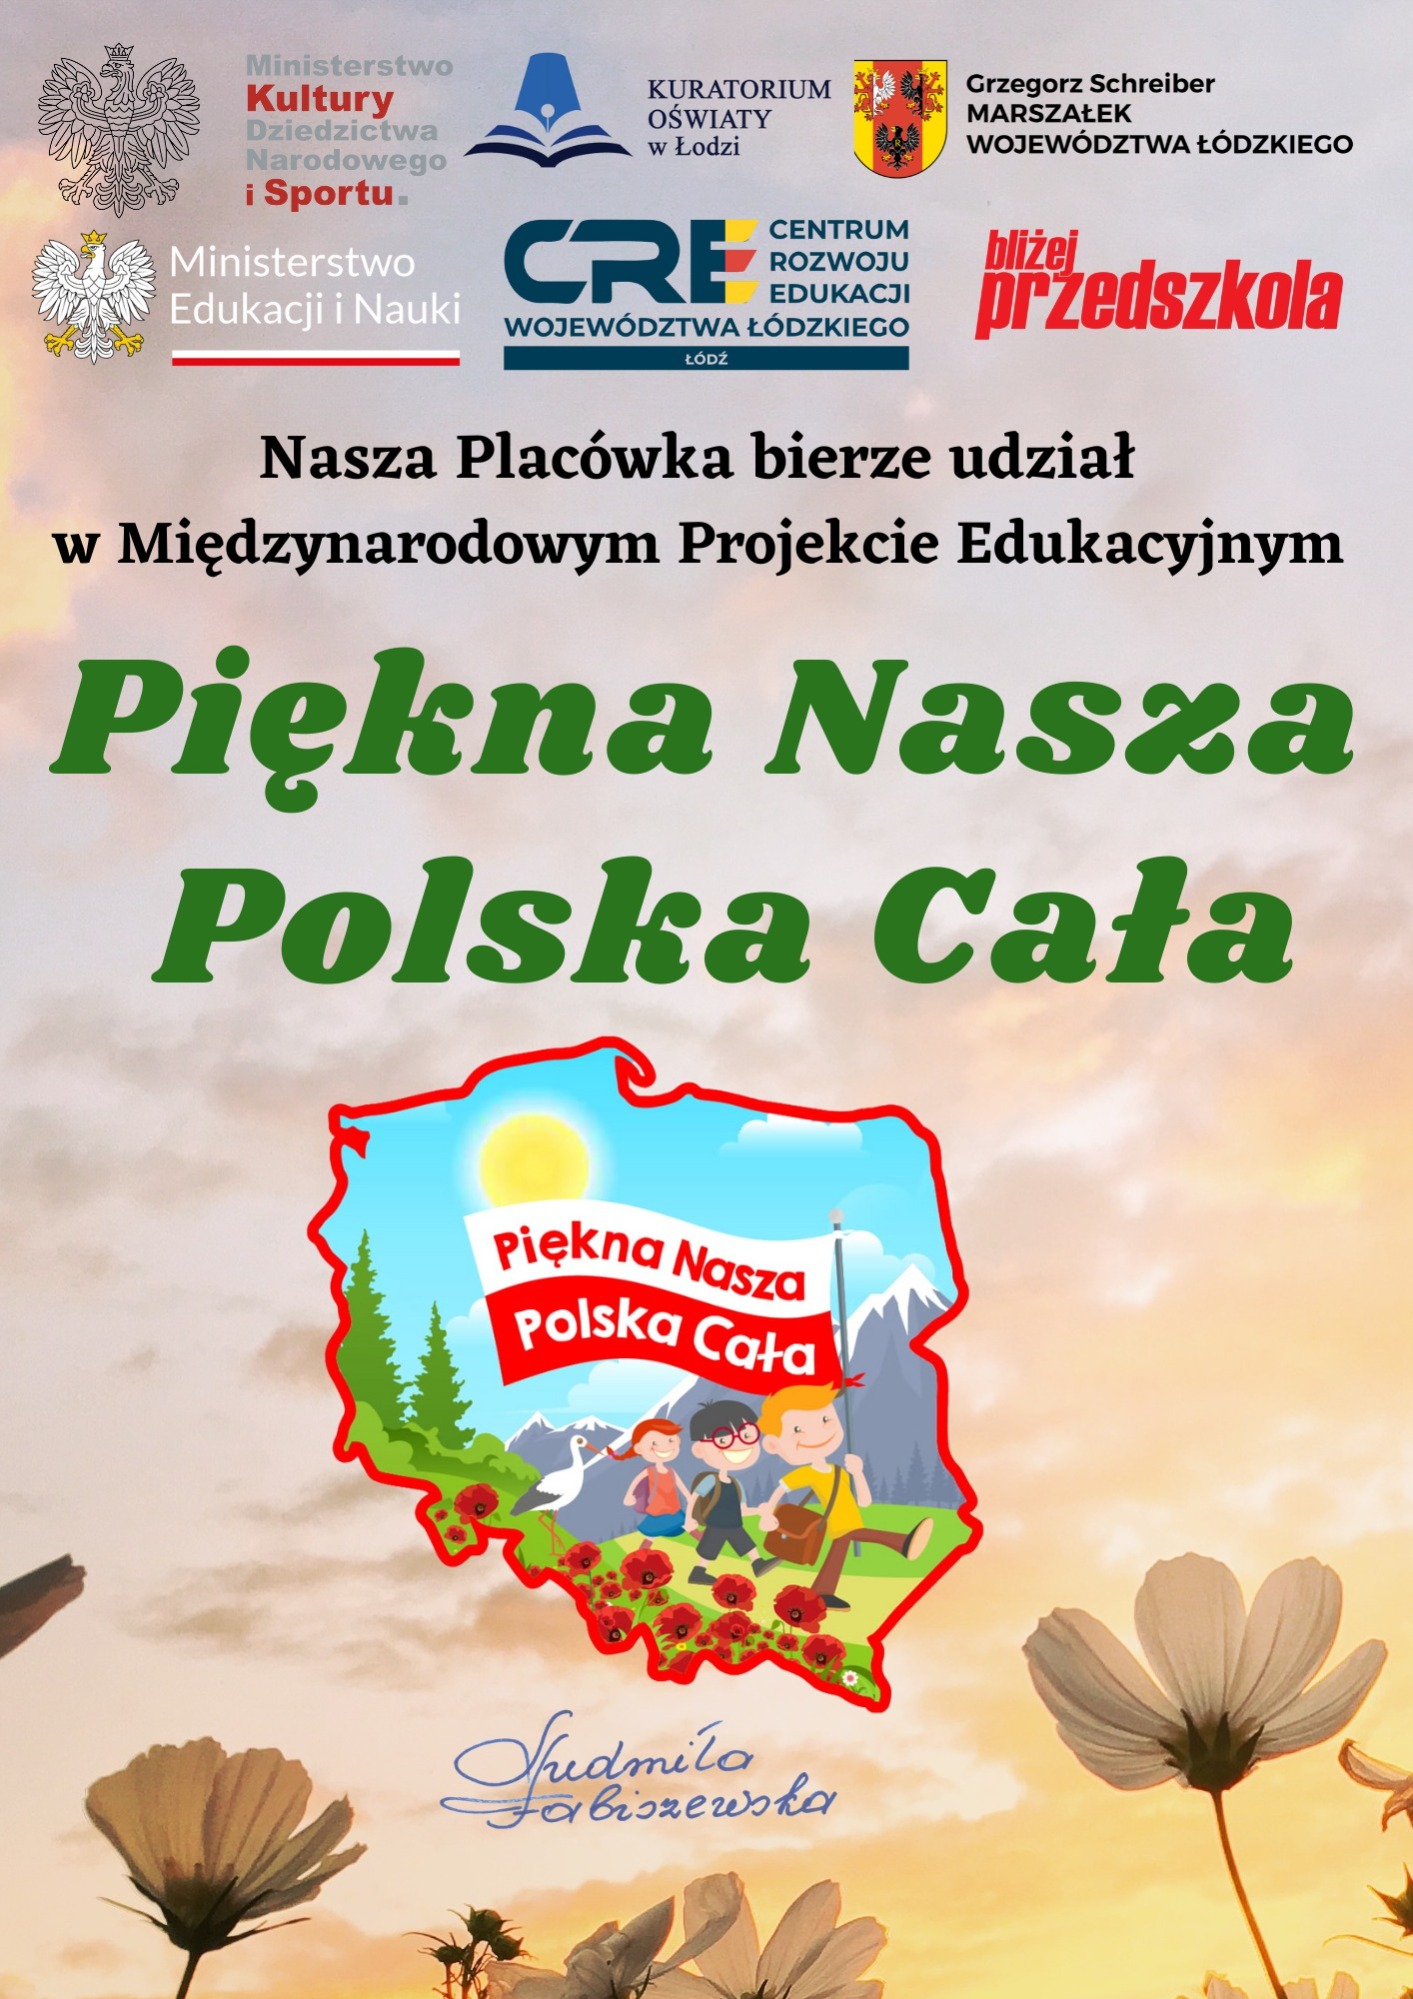 Piękna Nasza Polska Cała - Obrazek 1